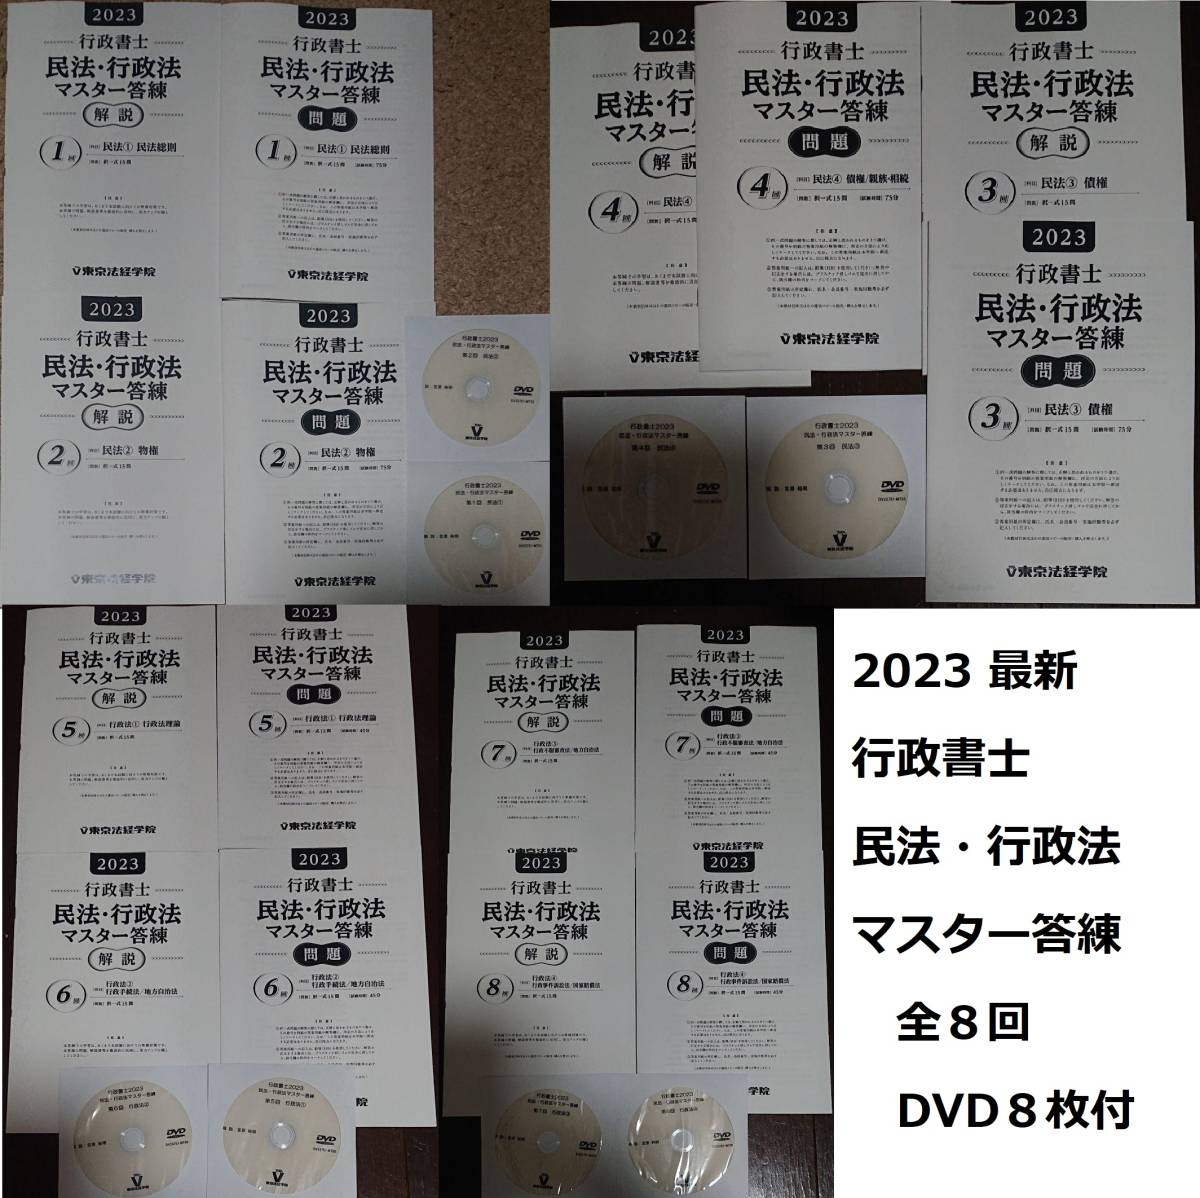 お待たせ! 2023年合格目標 【最新】 東京法経学院 DVD8枚完備 解答